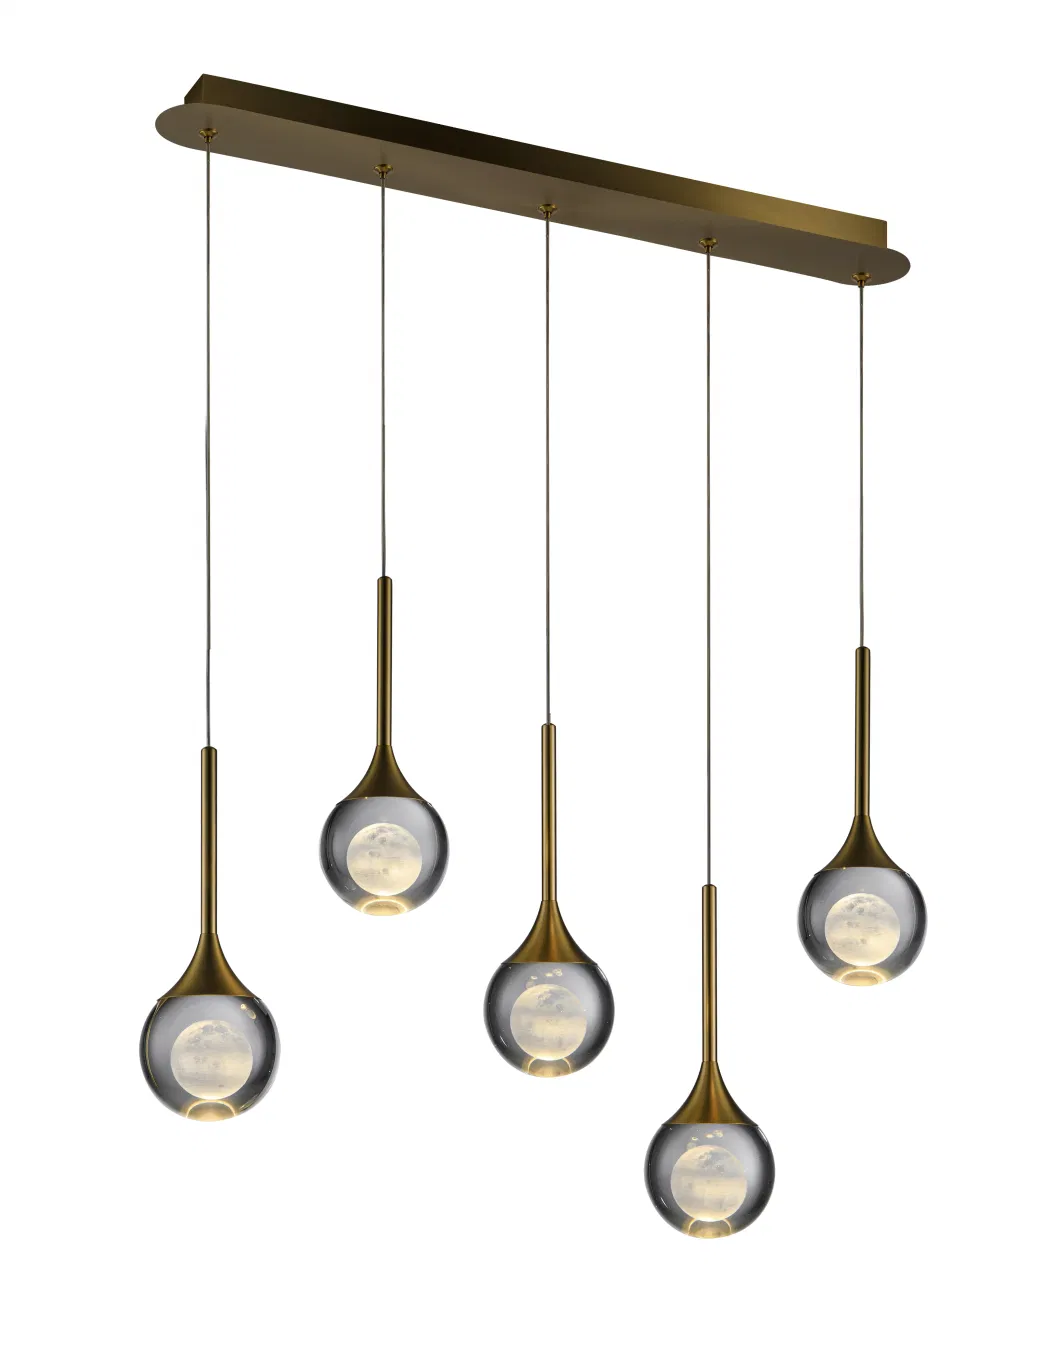 Masivel Factory Modern Lighting Luxury Crystal Chandelier Light LED Pendant Lamp